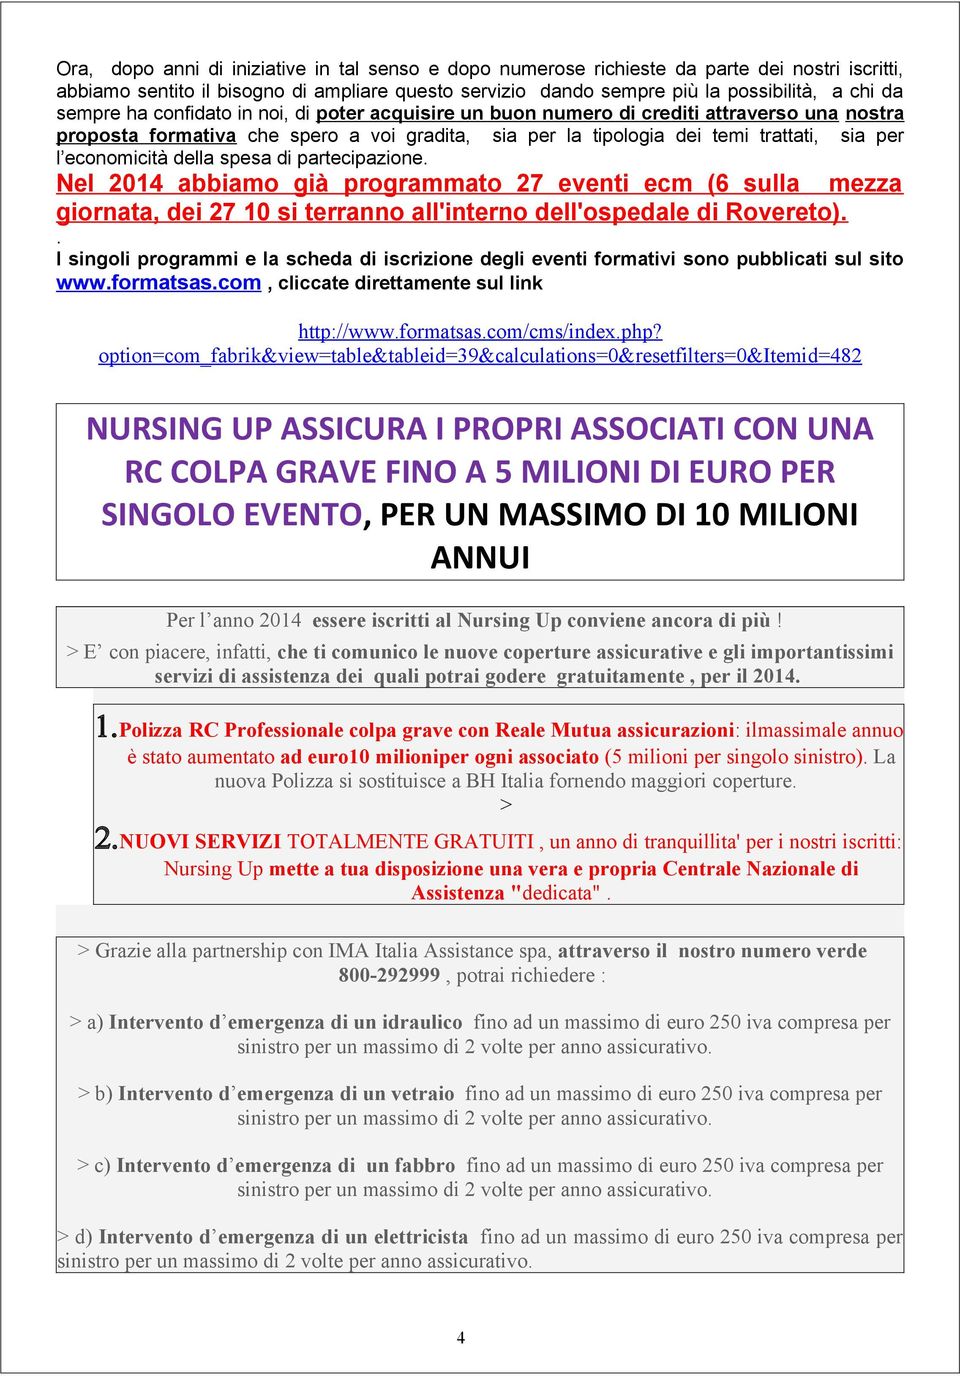 economicità della spesa di partecipazione. Nel 2014 abbiamo già programmato 27 eventi ecm (6 sulla mezza giornata, dei 27 10 si terranno all'interno dell'ospedale di Rovereto).